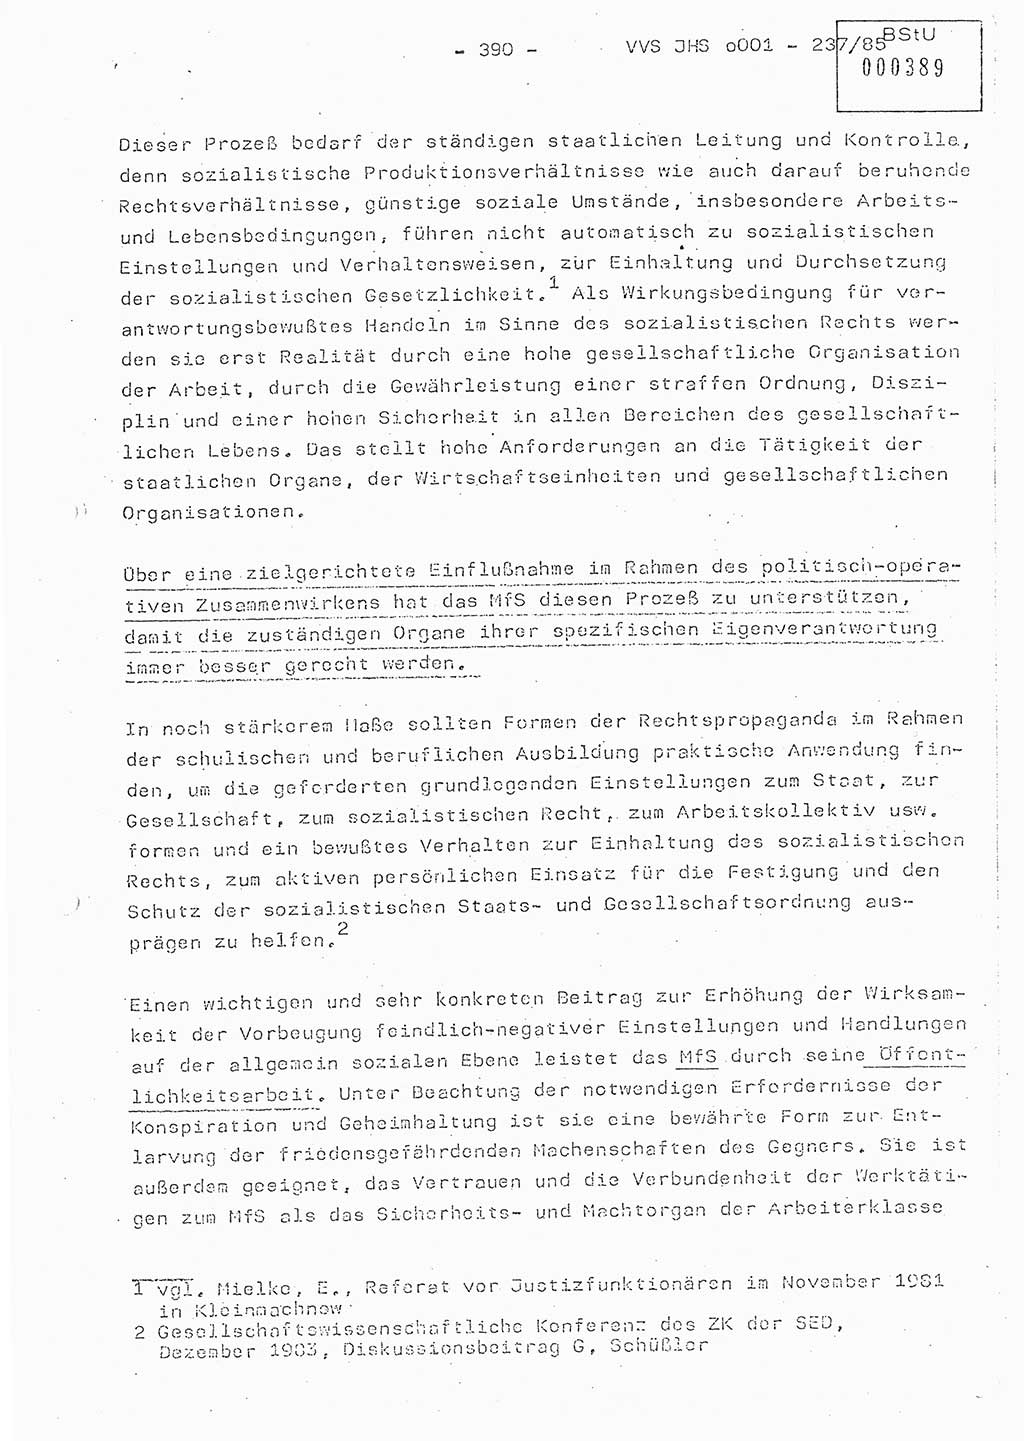 Dissertation Oberstleutnant Peter Jakulski (JHS), Oberstleutnat Christian Rudolph (HA Ⅸ), Major Horst Böttger (ZMD), Major Wolfgang Grüneberg (JHS), Major Albert Meutsch (JHS), Ministerium für Staatssicherheit (MfS) [Deutsche Demokratische Republik (DDR)], Juristische Hochschule (JHS), Vertrauliche Verschlußsache (VVS) o001-237/85, Potsdam 1985, Seite 390 (Diss. MfS DDR JHS VVS o001-237/85 1985, S. 390)